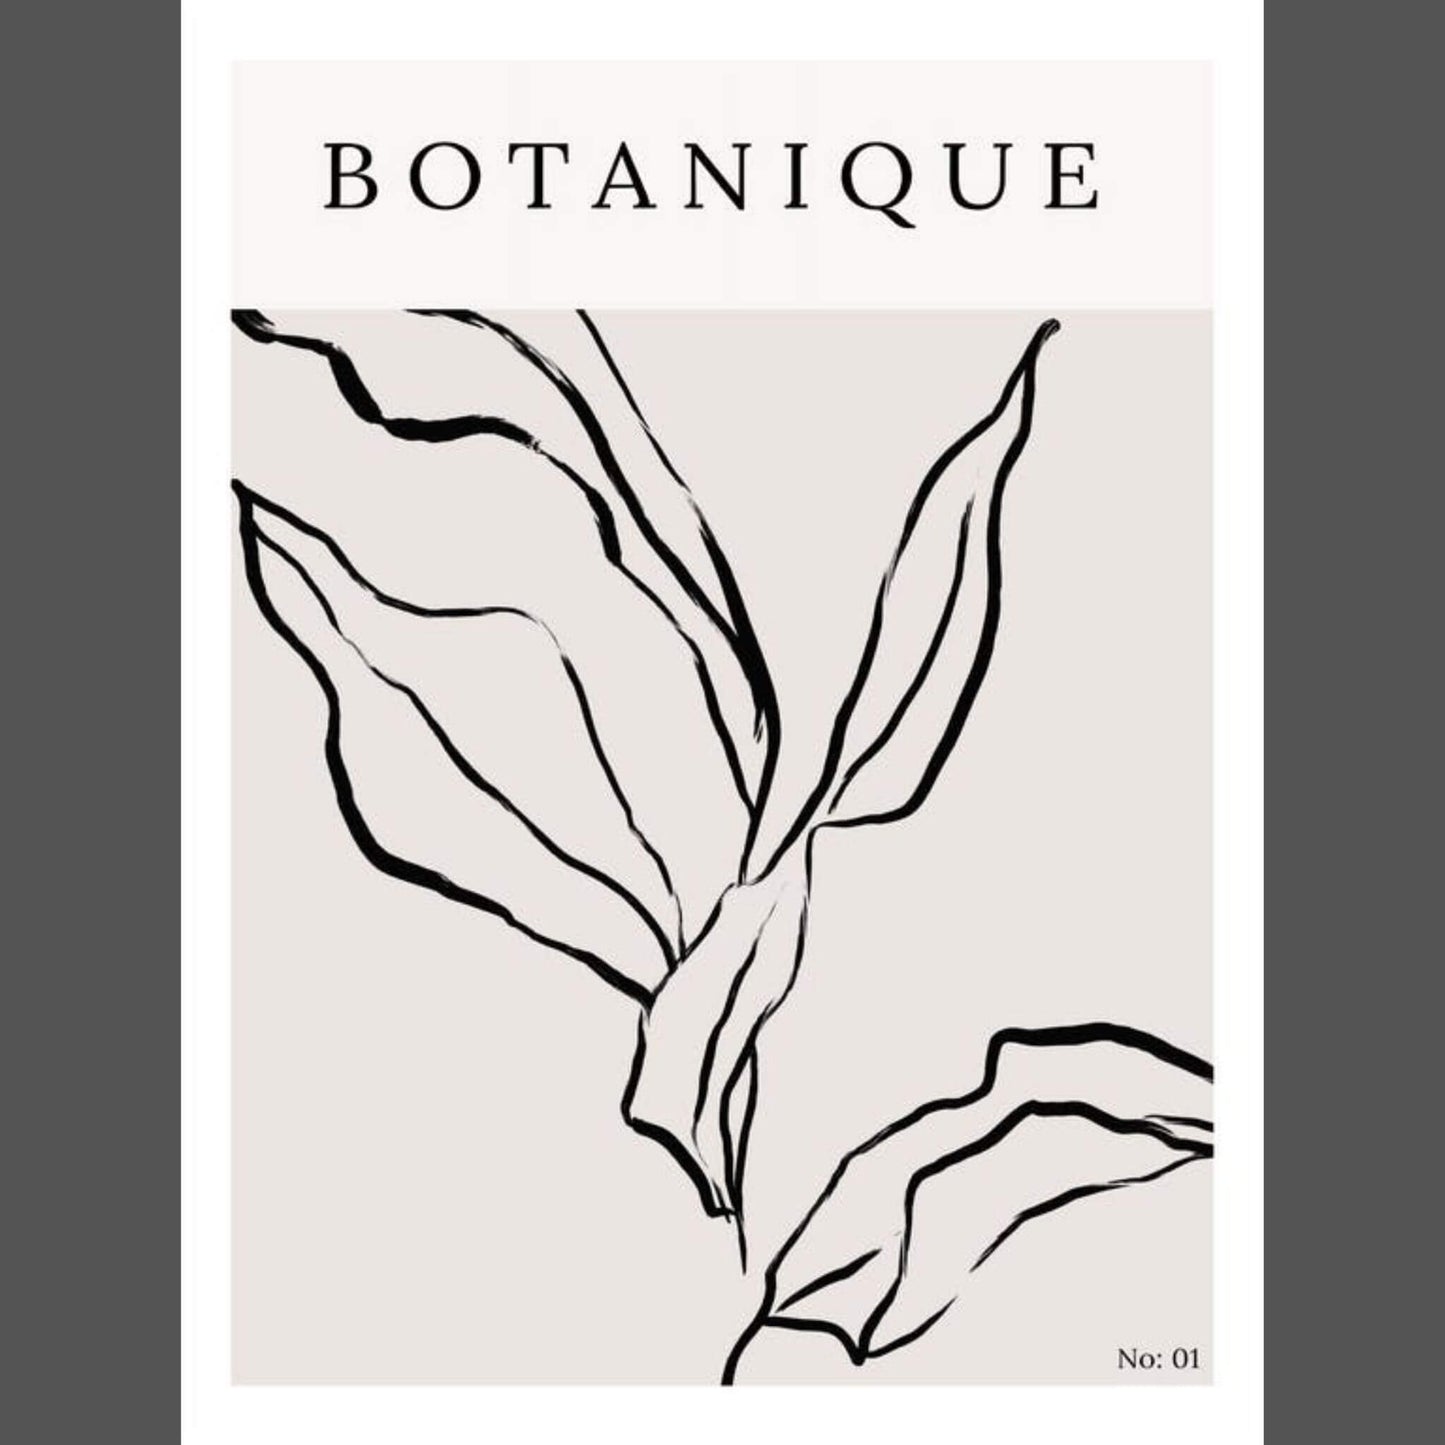 No.04 Poster Botanique 30x40 - Unik by Nature